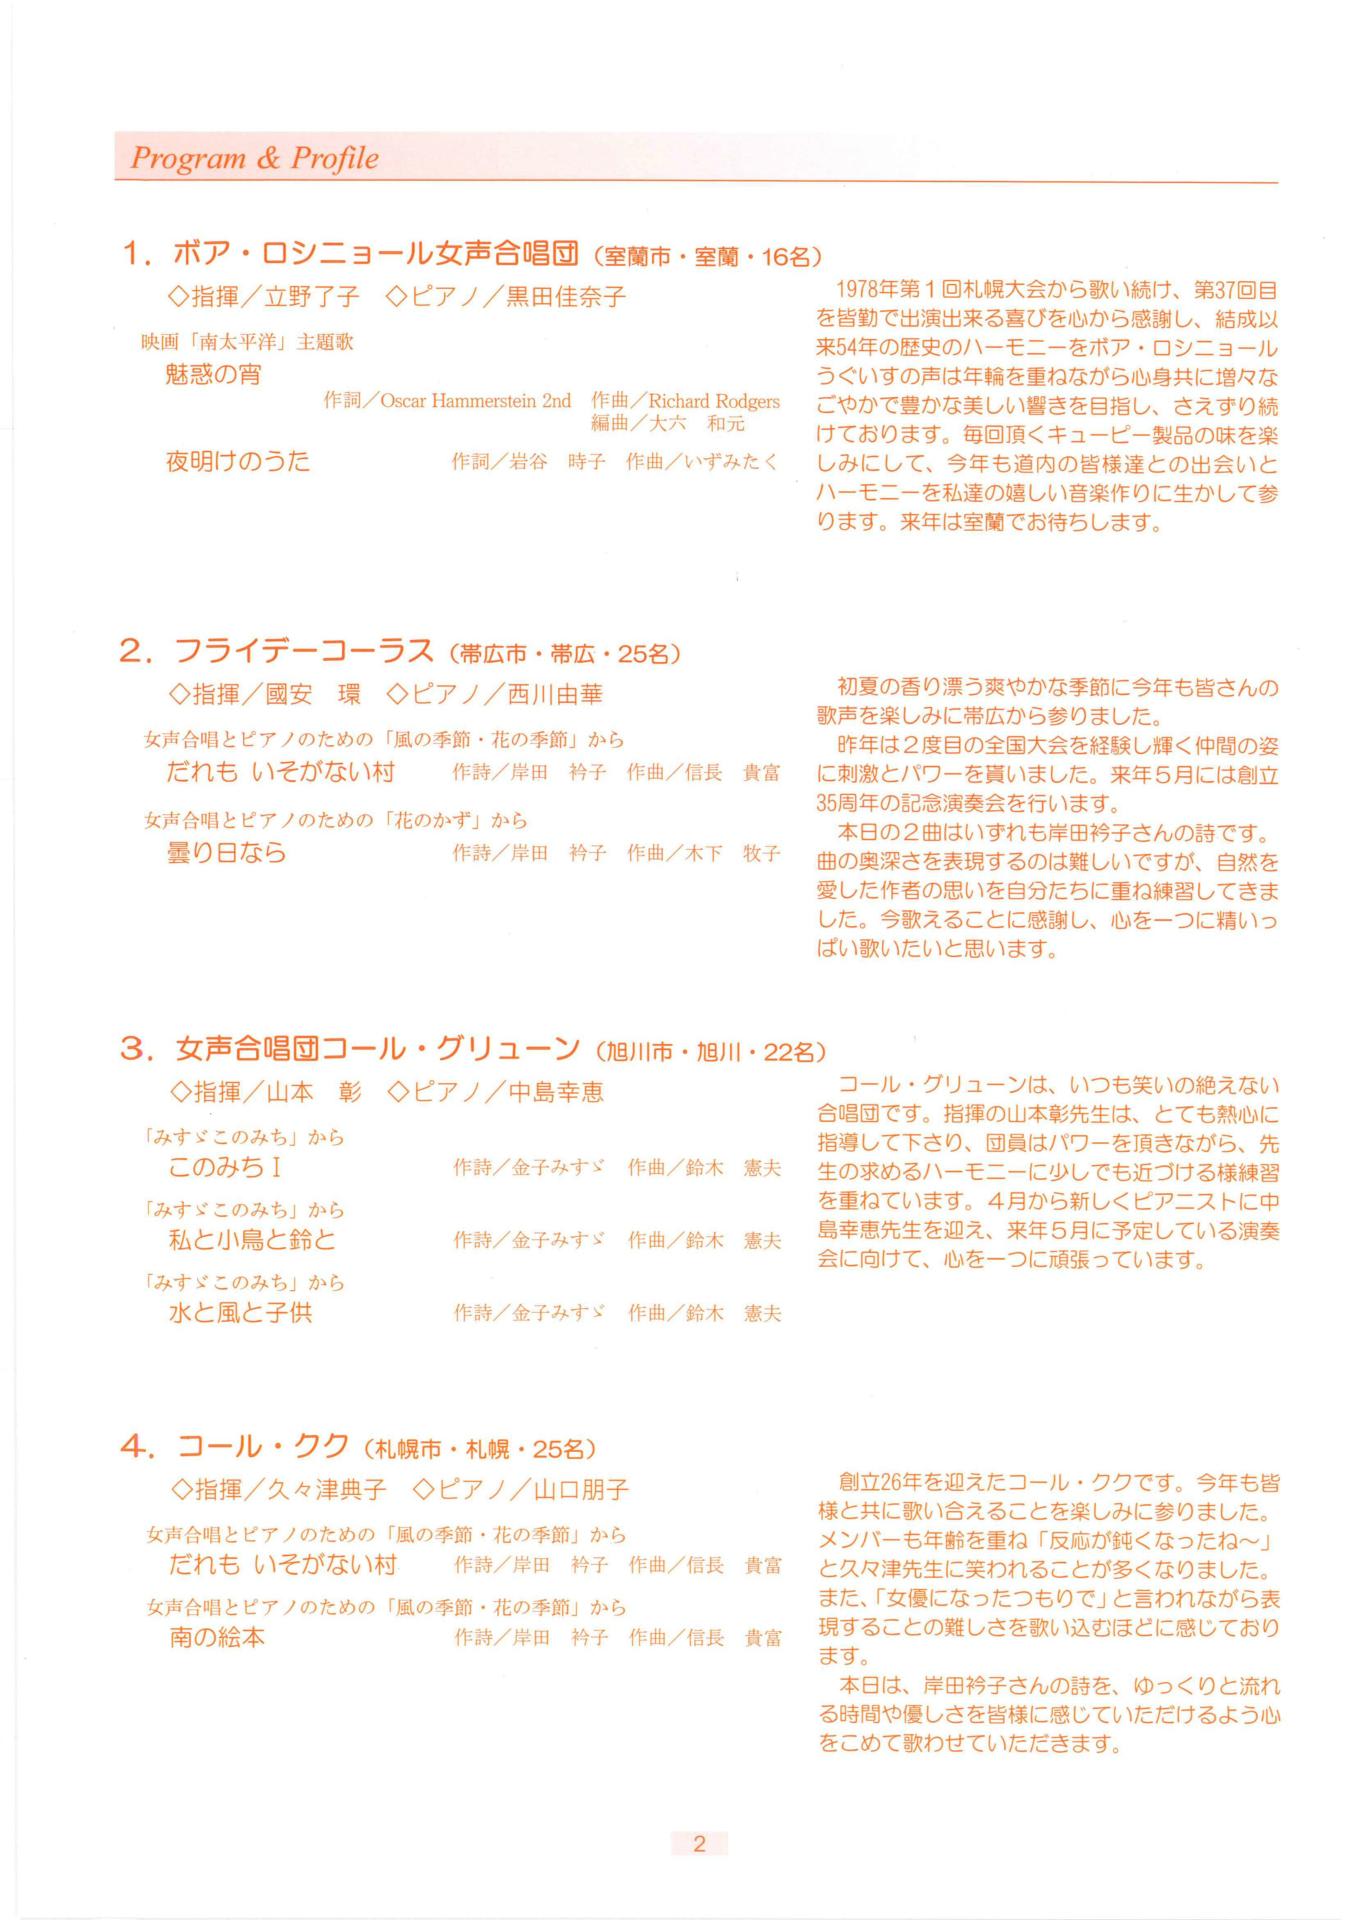 おかあさん北海道大会」のブログ記事一覧-小樽合唱連盟・合唱祭等の記録